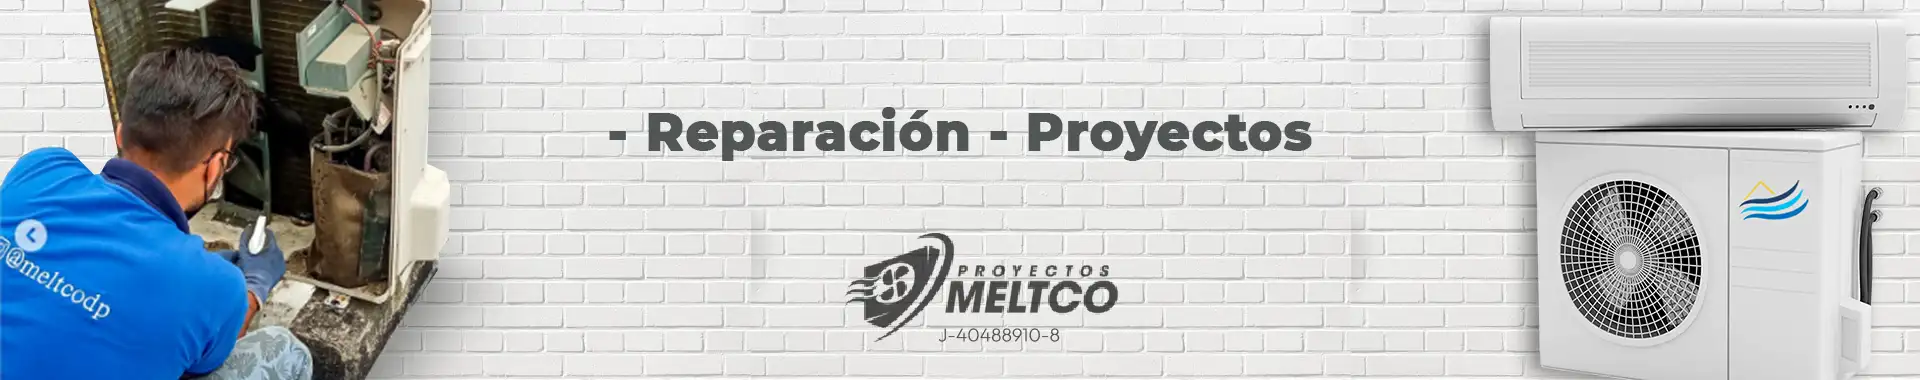 Imagen 4 del perfil de Proyectos Meltco D&P